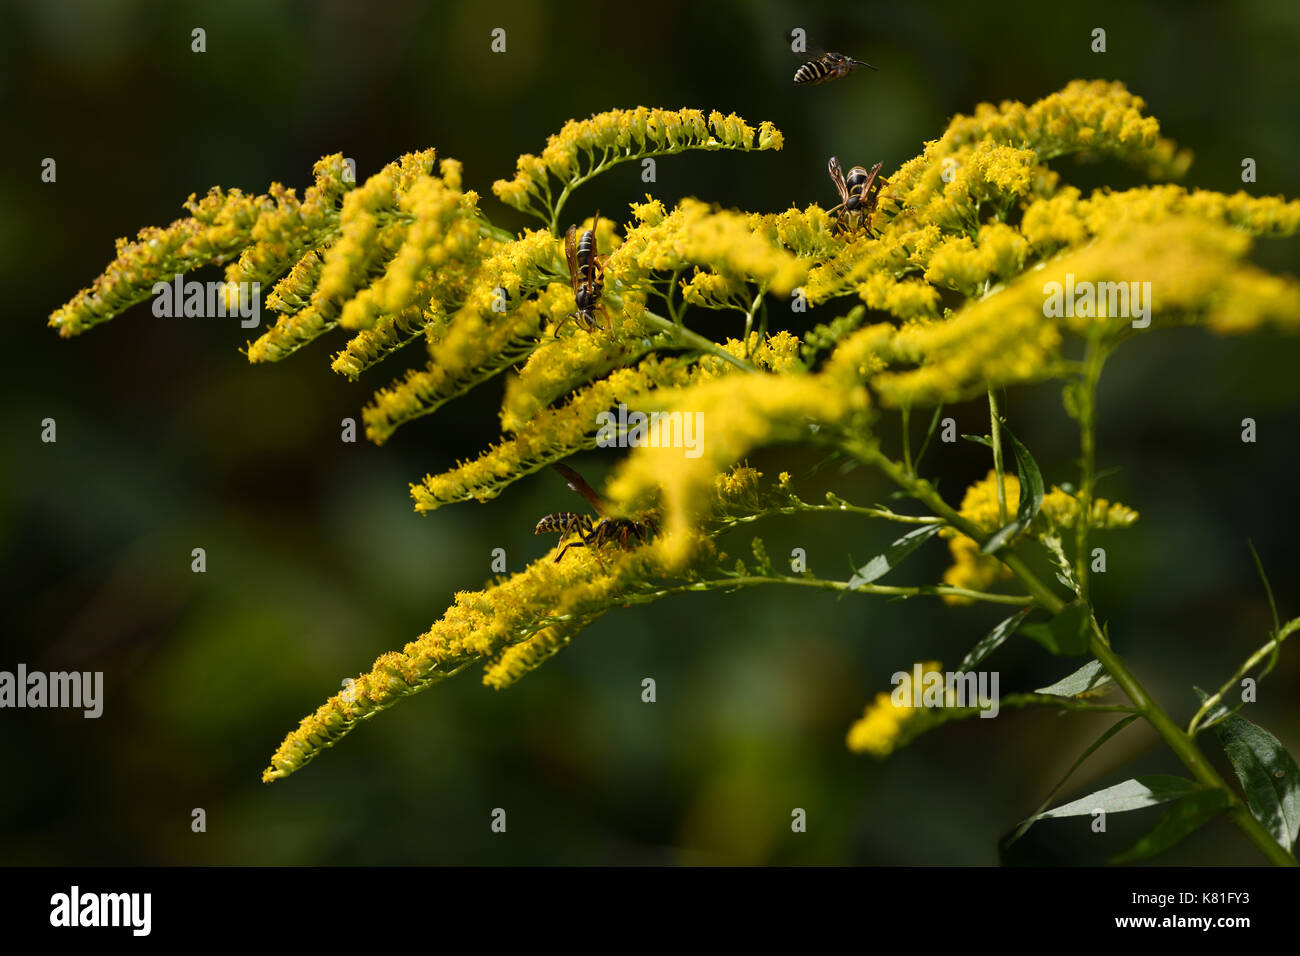 Wespen Bestäuben der gelben Blüten eine mehrjährige krautige Pflanze  Goldrute im Herbst Toronto Kanada Stockfotografie - Alamy